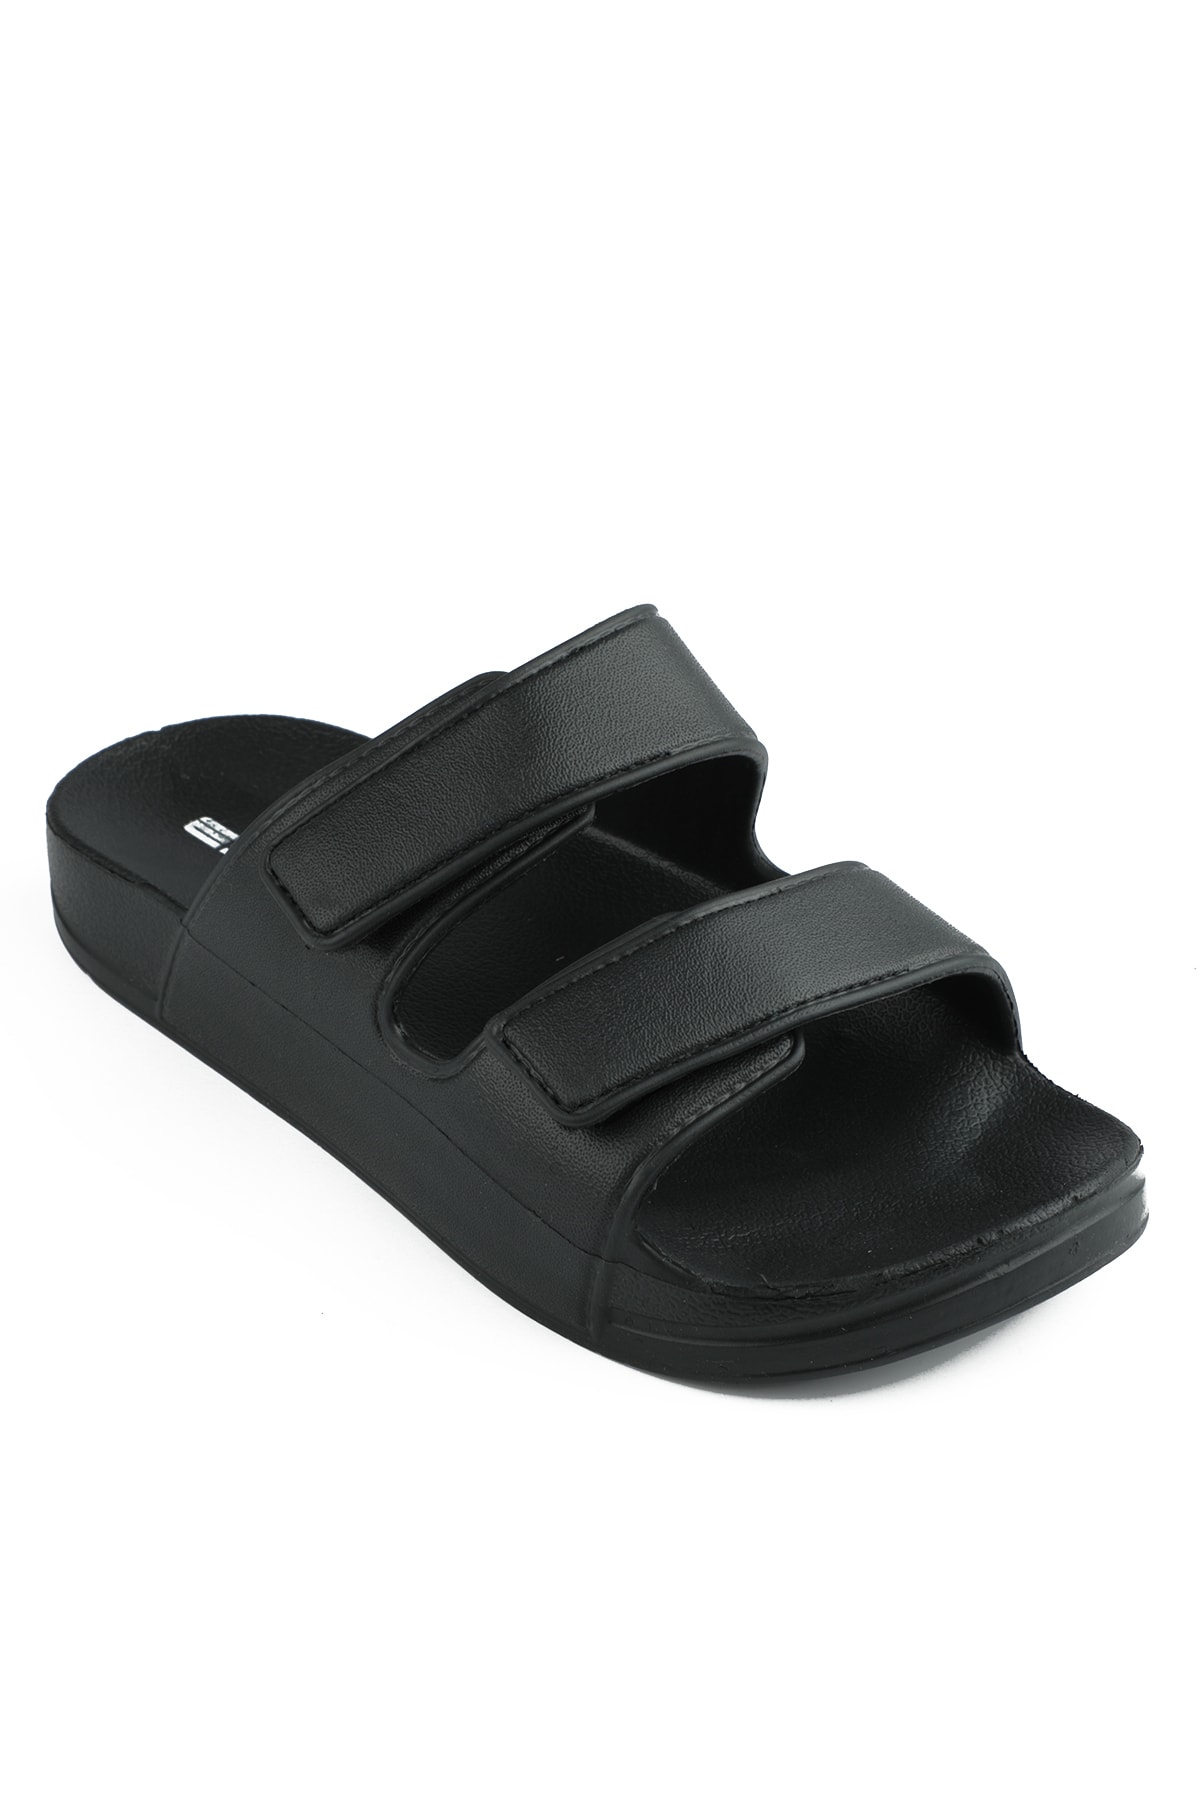 Levně Esem E272.z.000 Women's Slippers Black